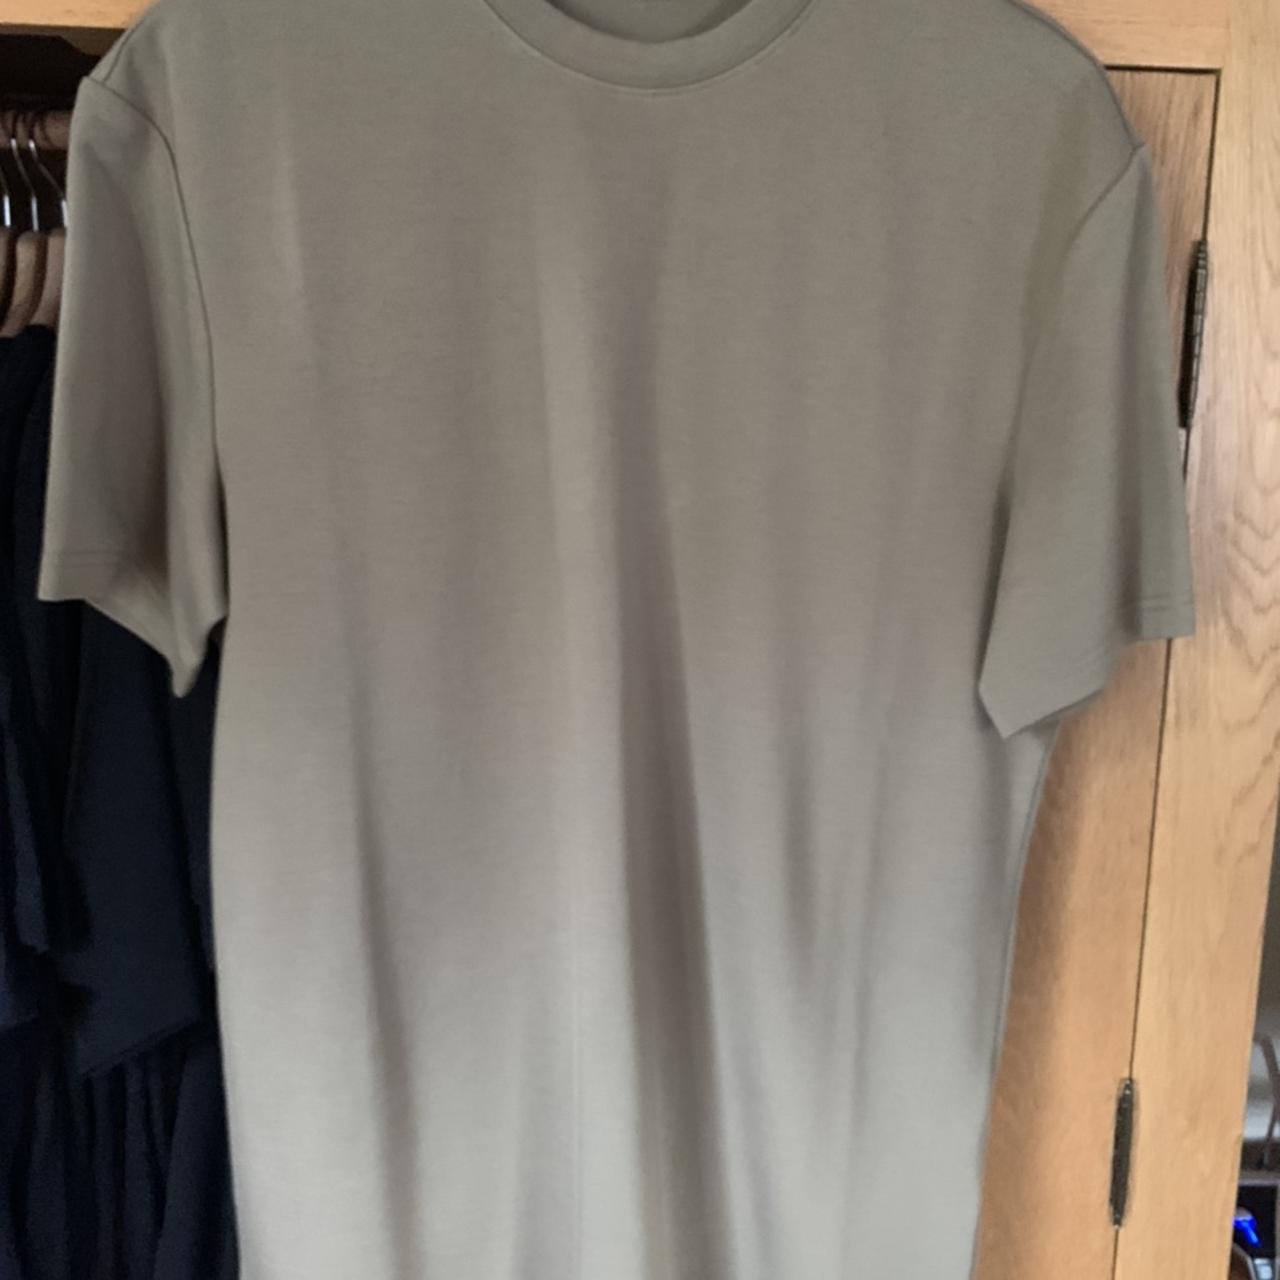 Arne clothing t shirt Size medium Never been worn... - Depop